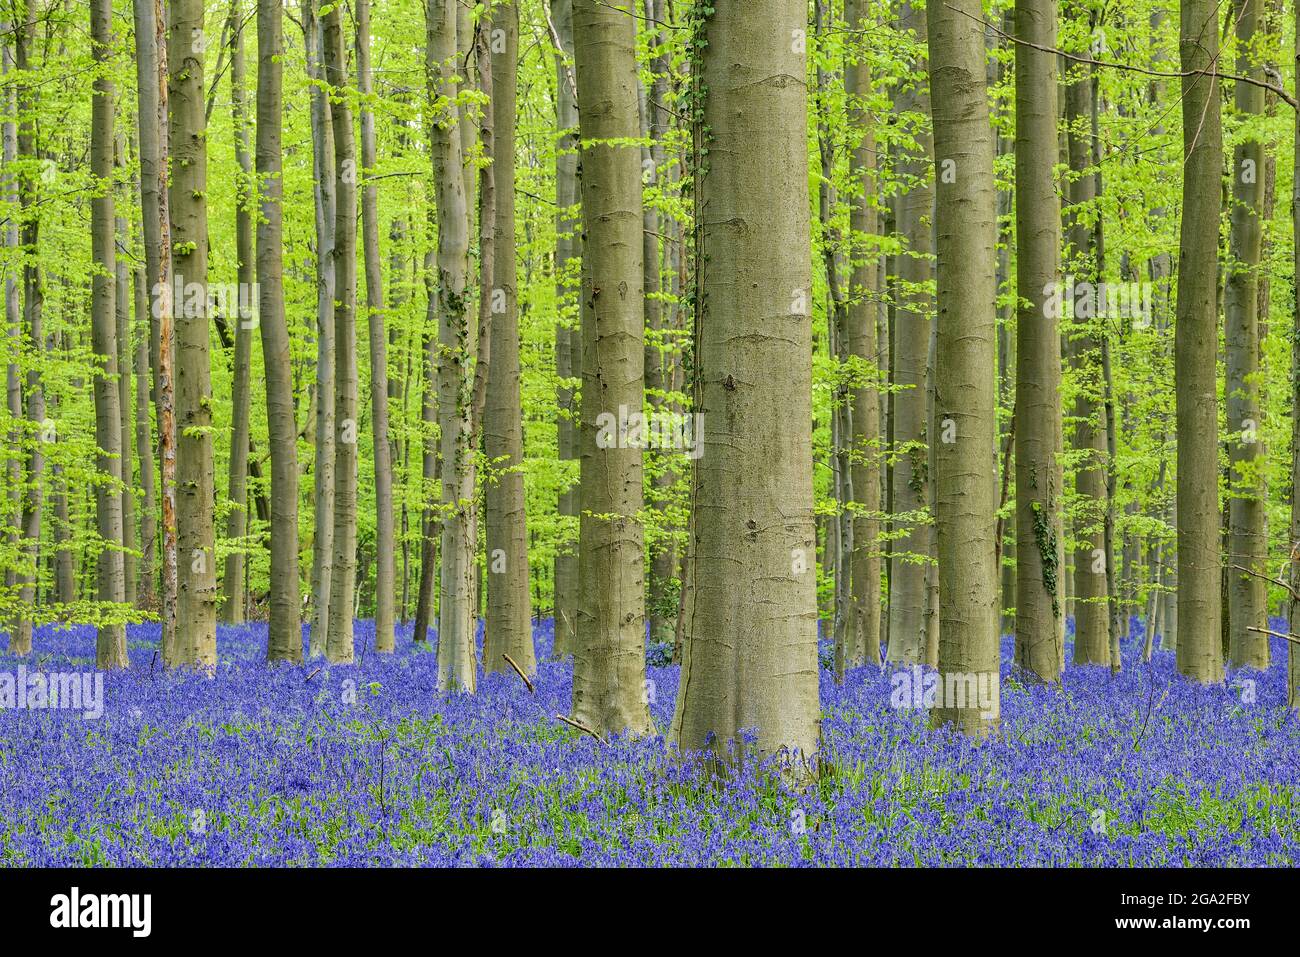 Flores de bluebell (Hyacintoides non-scripta) madera de haya alfombra de madera dura a principios de la primavera Foto de stock